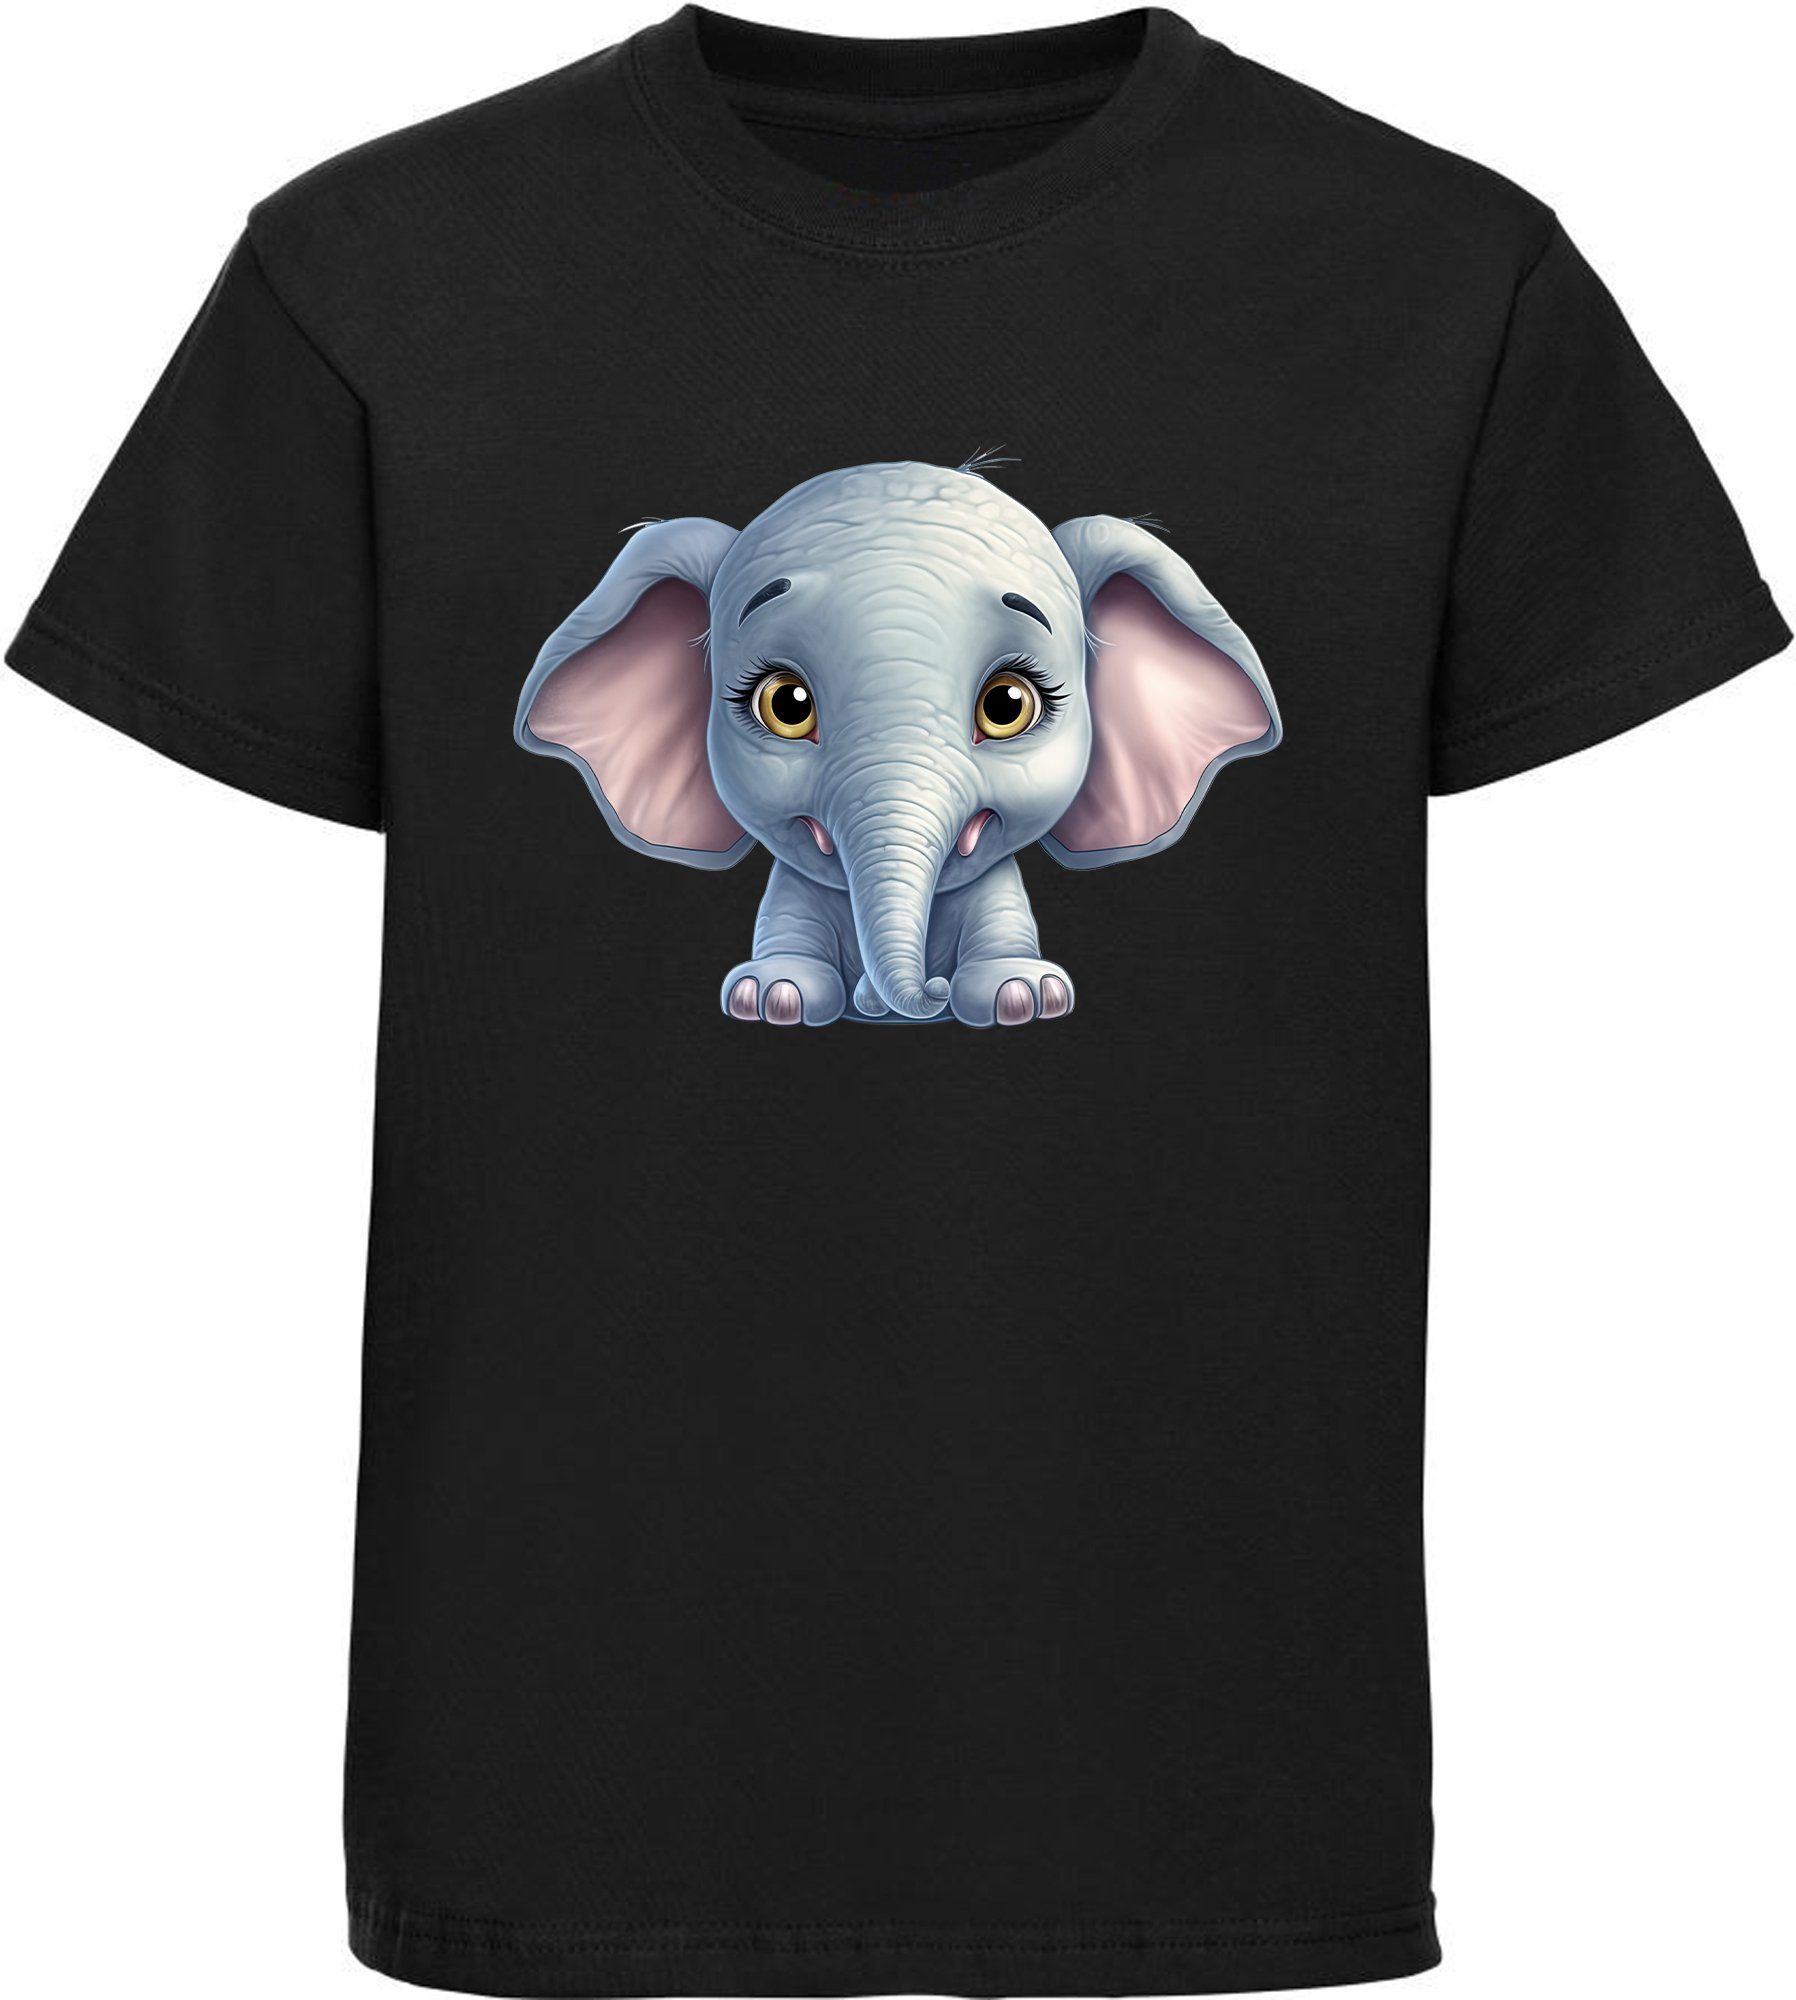 MyDesign24 T-Shirt Kinder Wildtier Print Shirt bedruckt - Baby Elefant Baumwollshirt mit Aufdruck, i272 schwarz